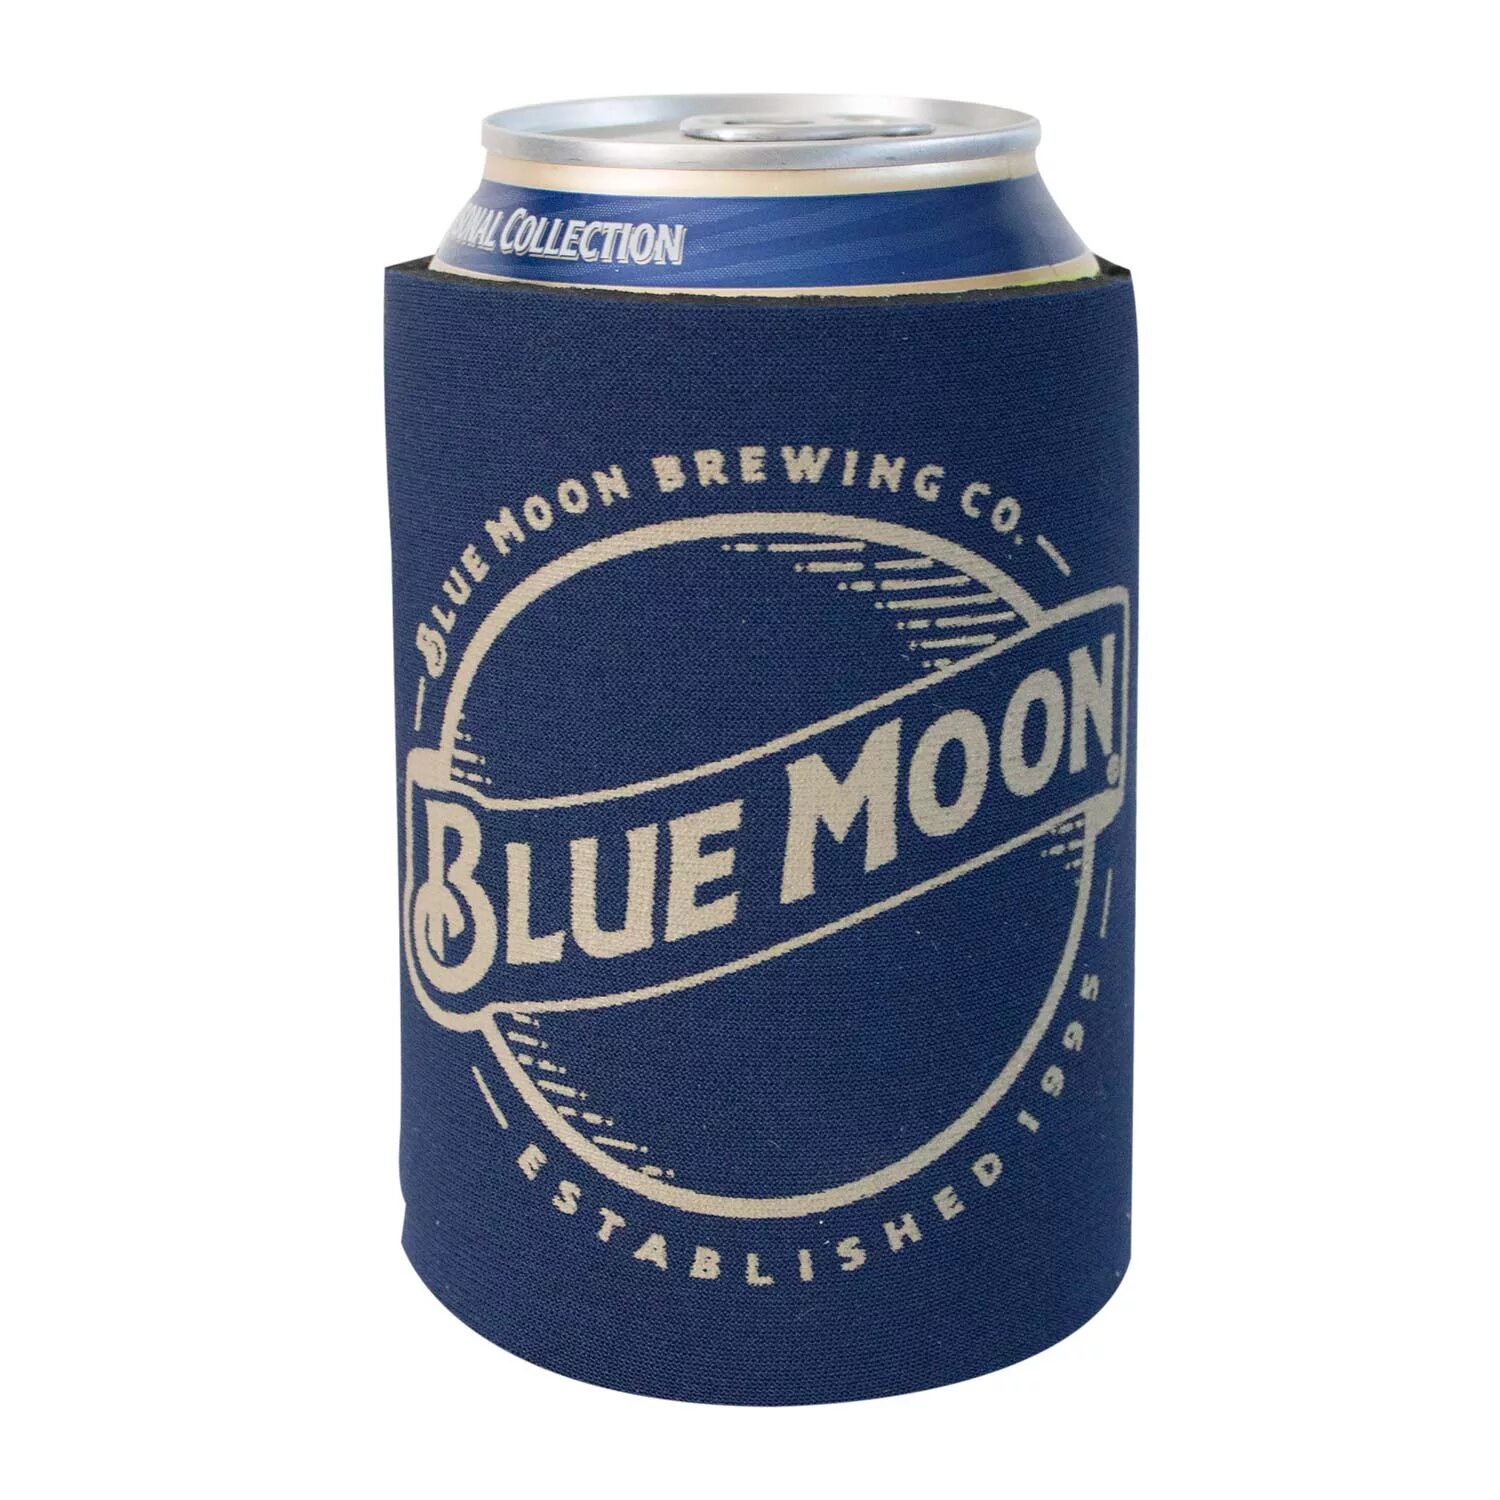 Блю Мун пиво. Blue Moon в банке. 12 Moon пиво. Blue Moon logo. Пиво мун